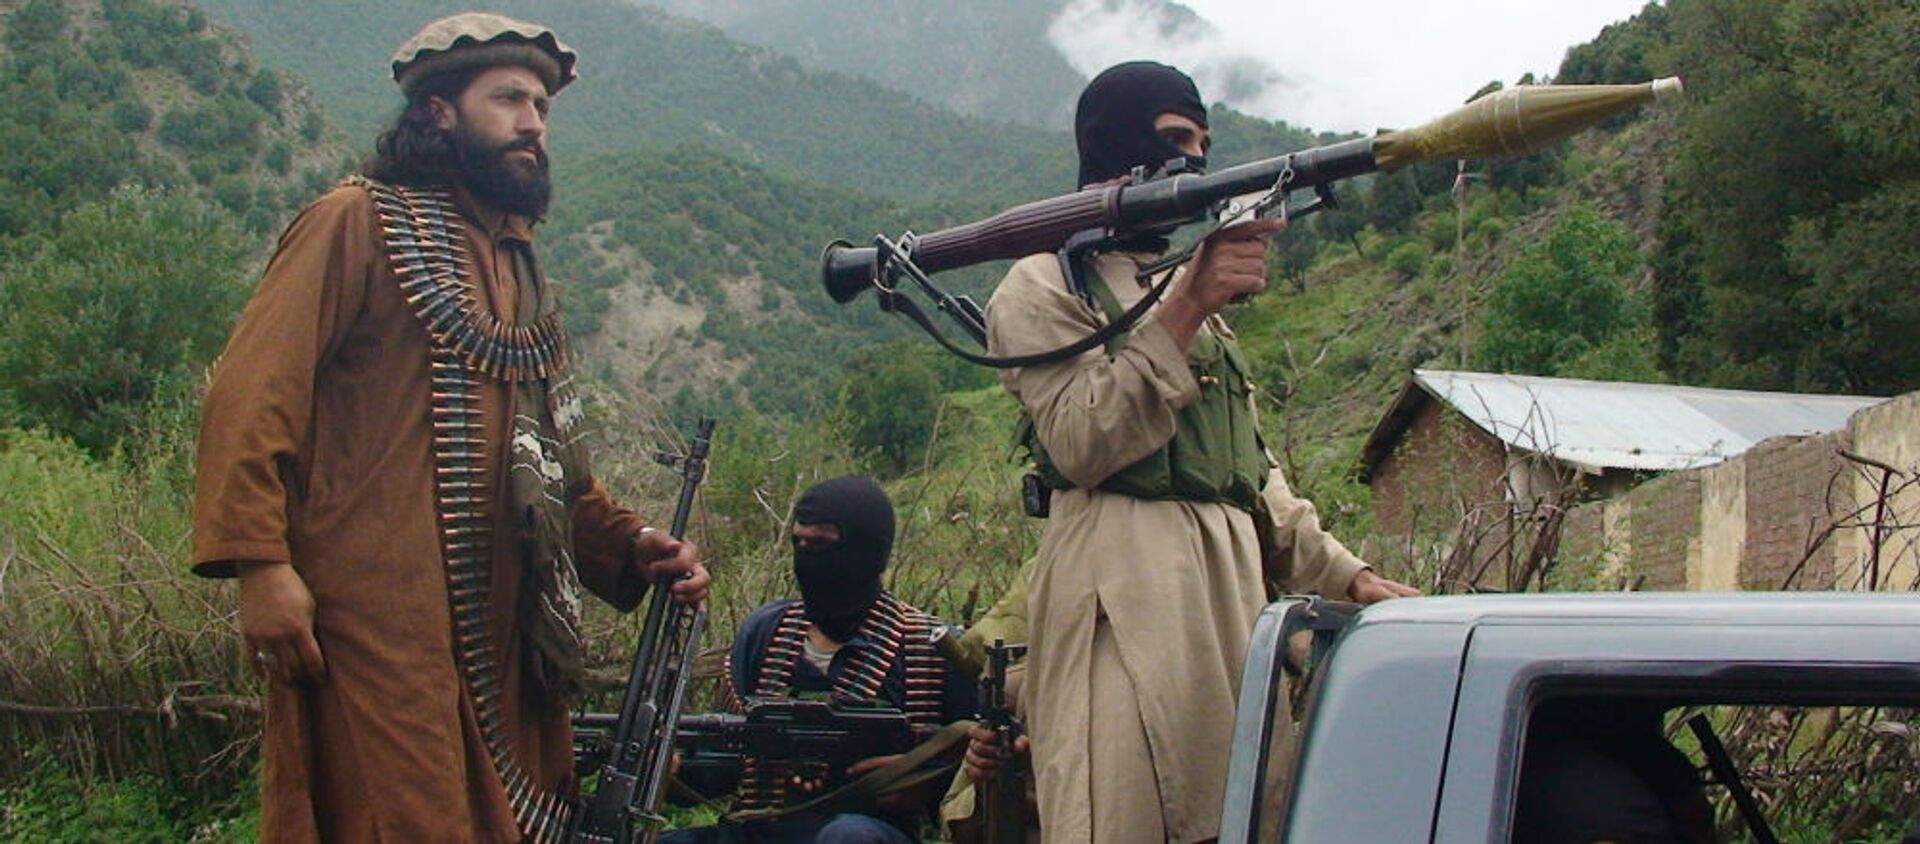  طالبان امتیاز بیشتر از روند صلح  بدست می آودند تا در جنگ         - اسپوتنیک افغانستان  , 1920, 01.03.2021